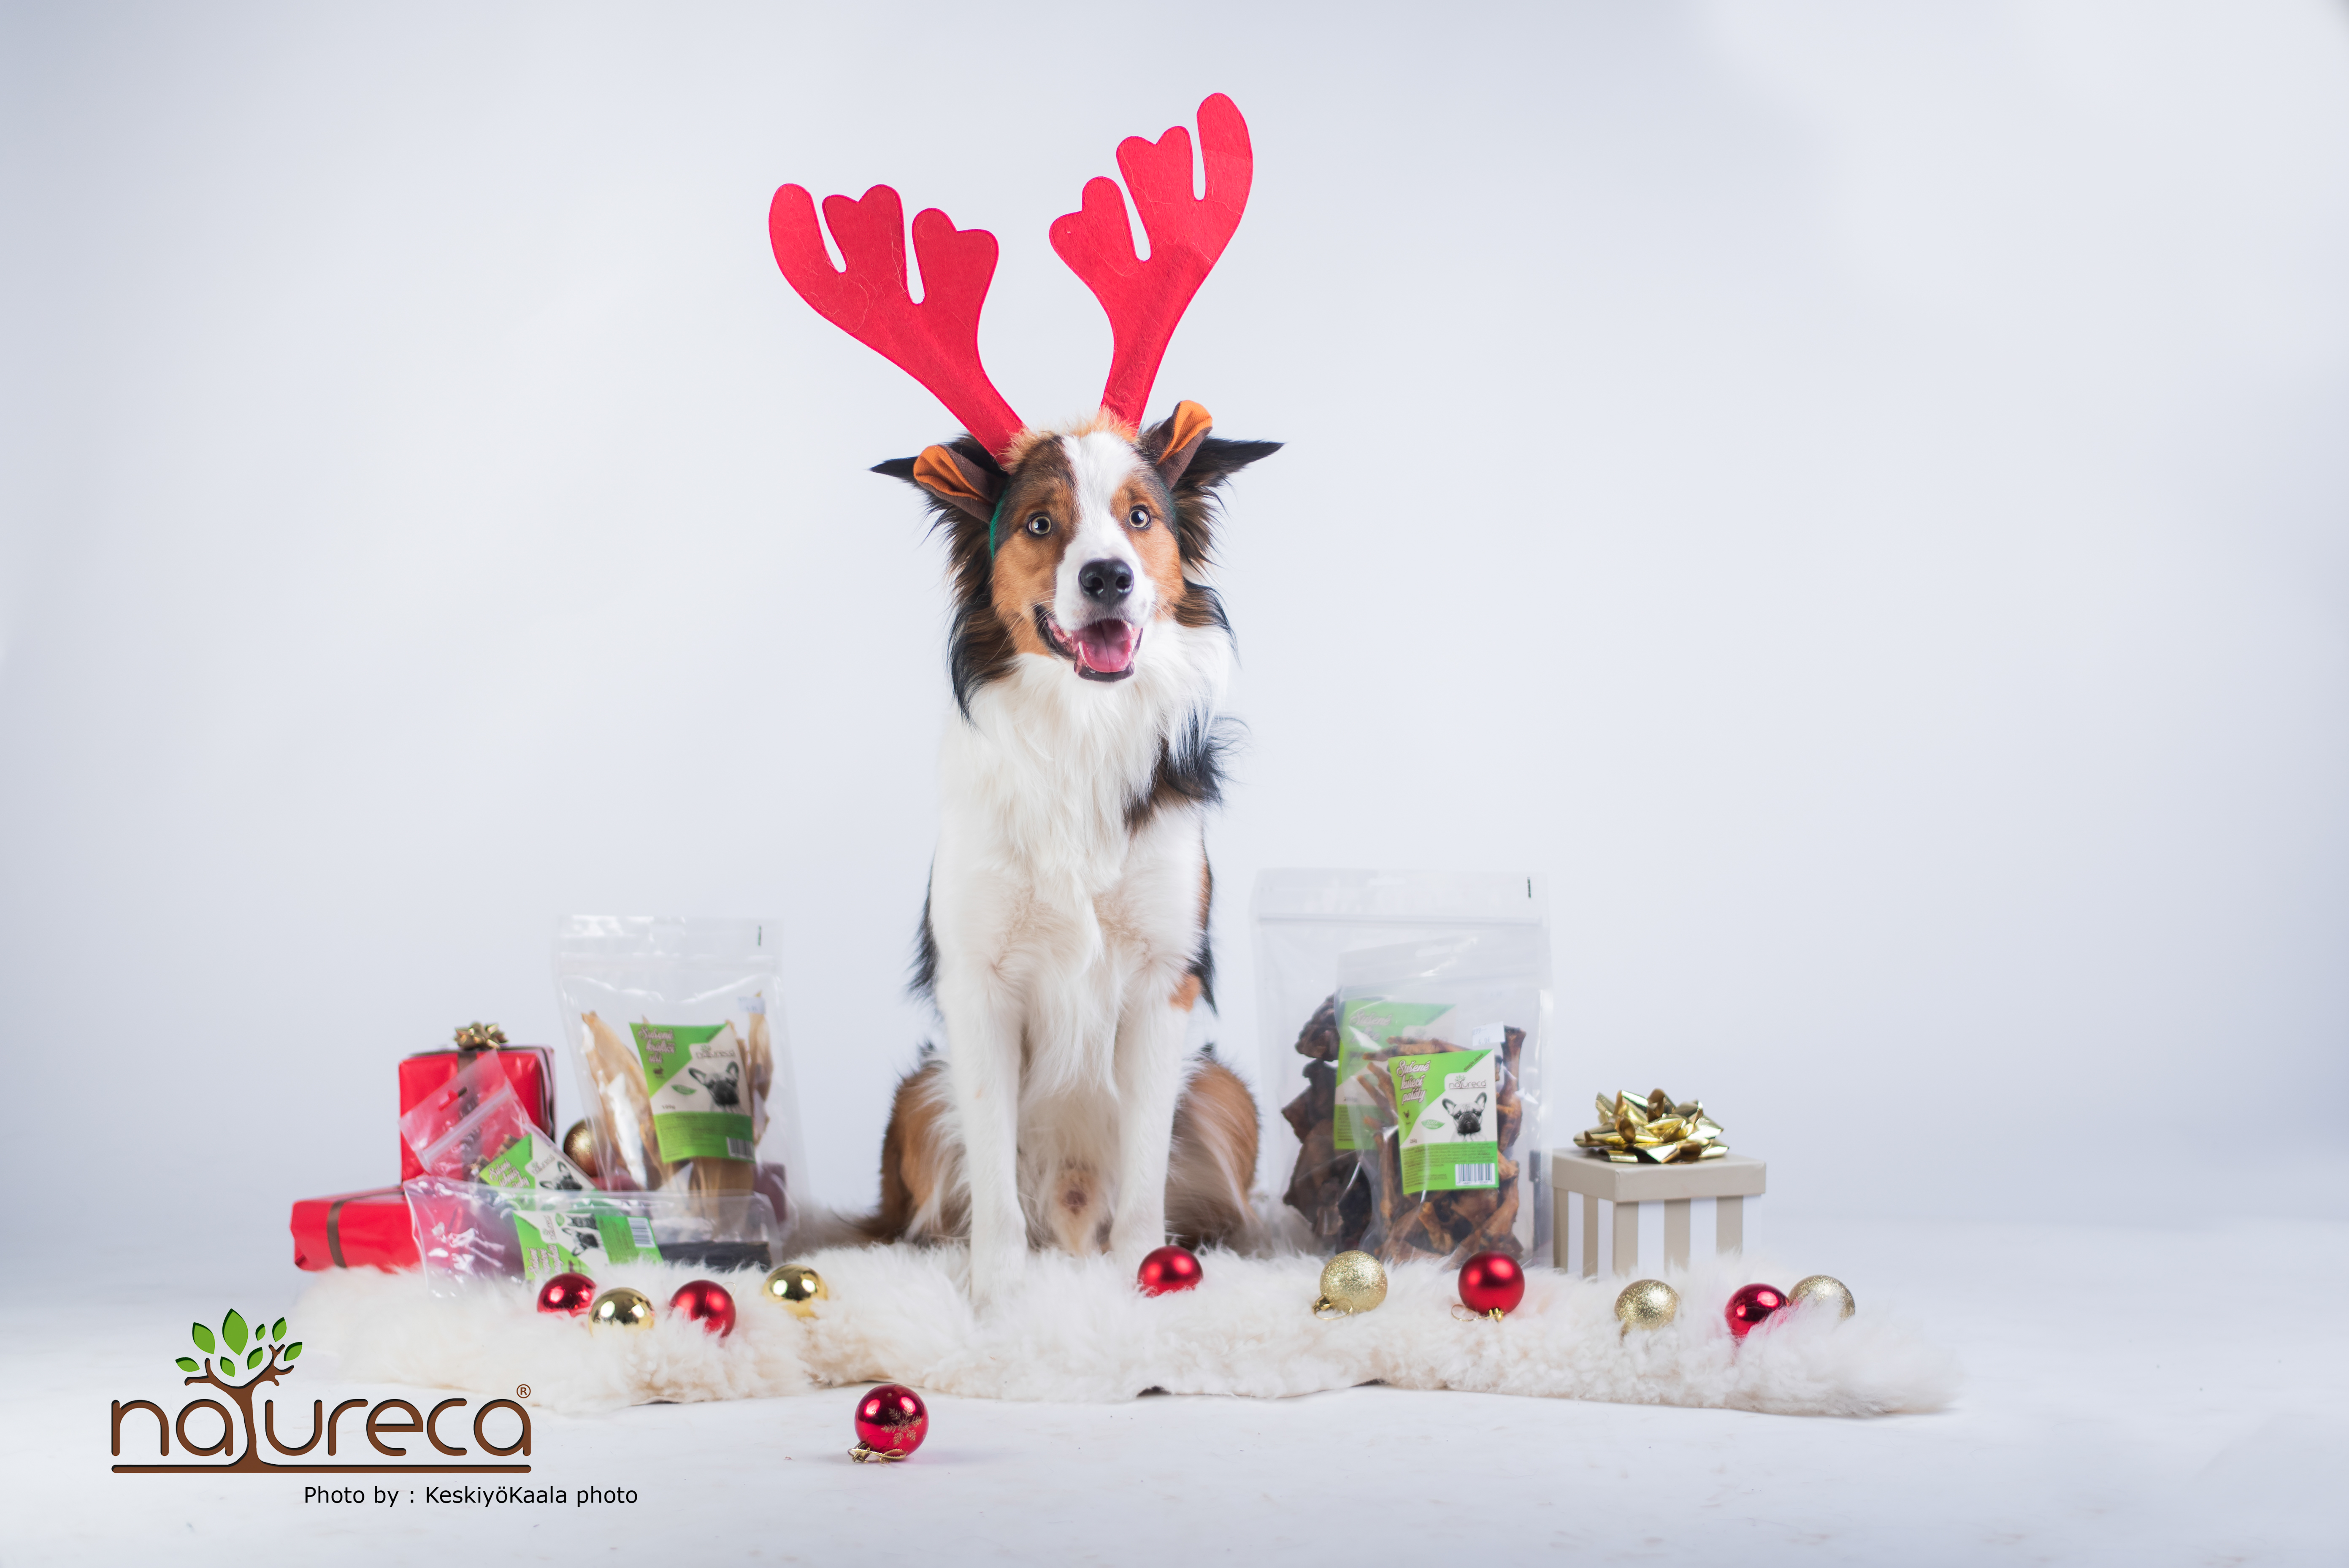 Vianočný DogBox L-Maxi pre veľké psy-8ks produktov+vianočný čaj pre páničkov